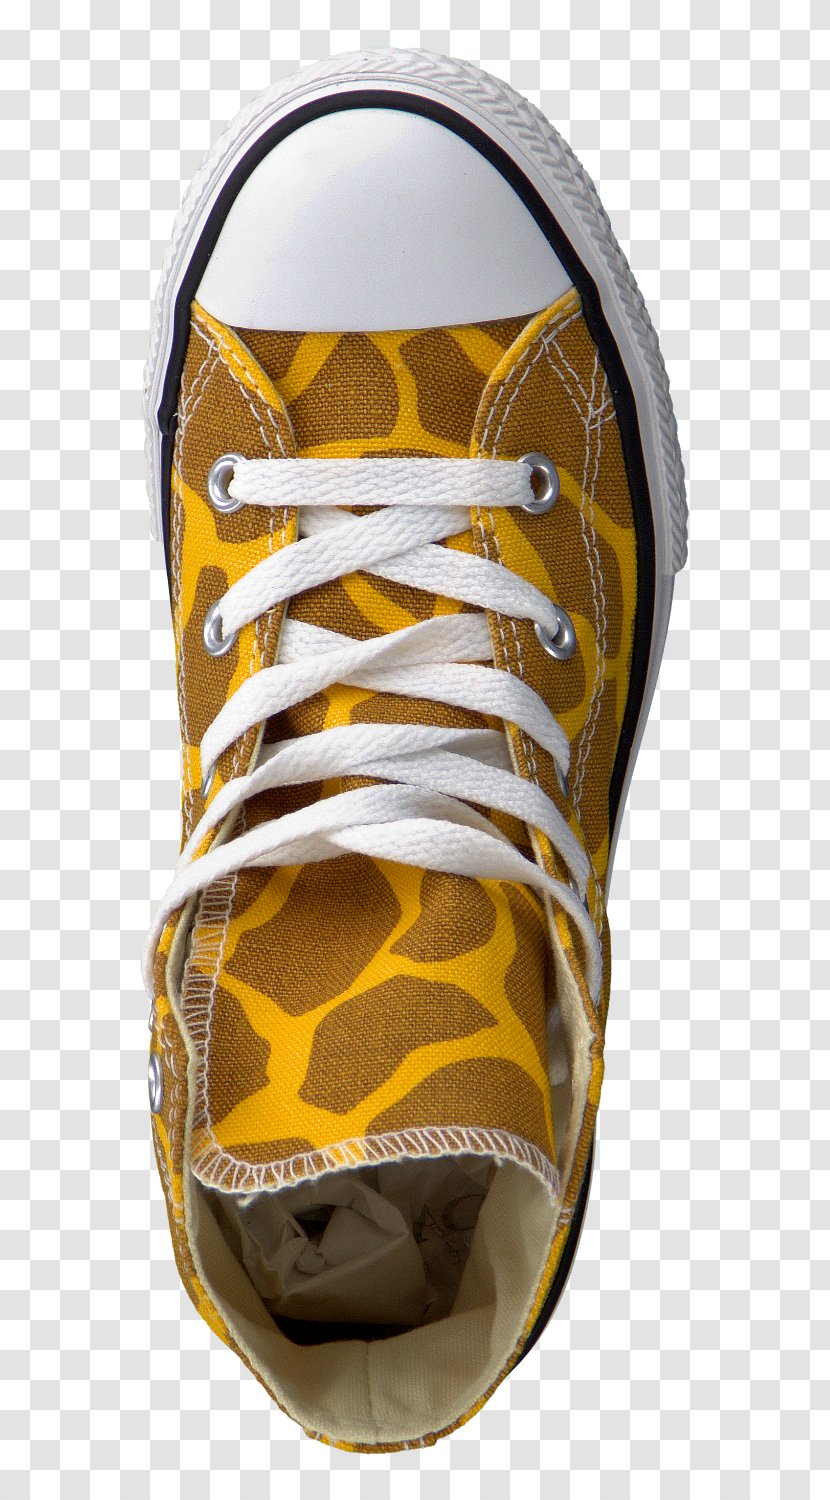 yellow animal print shoes